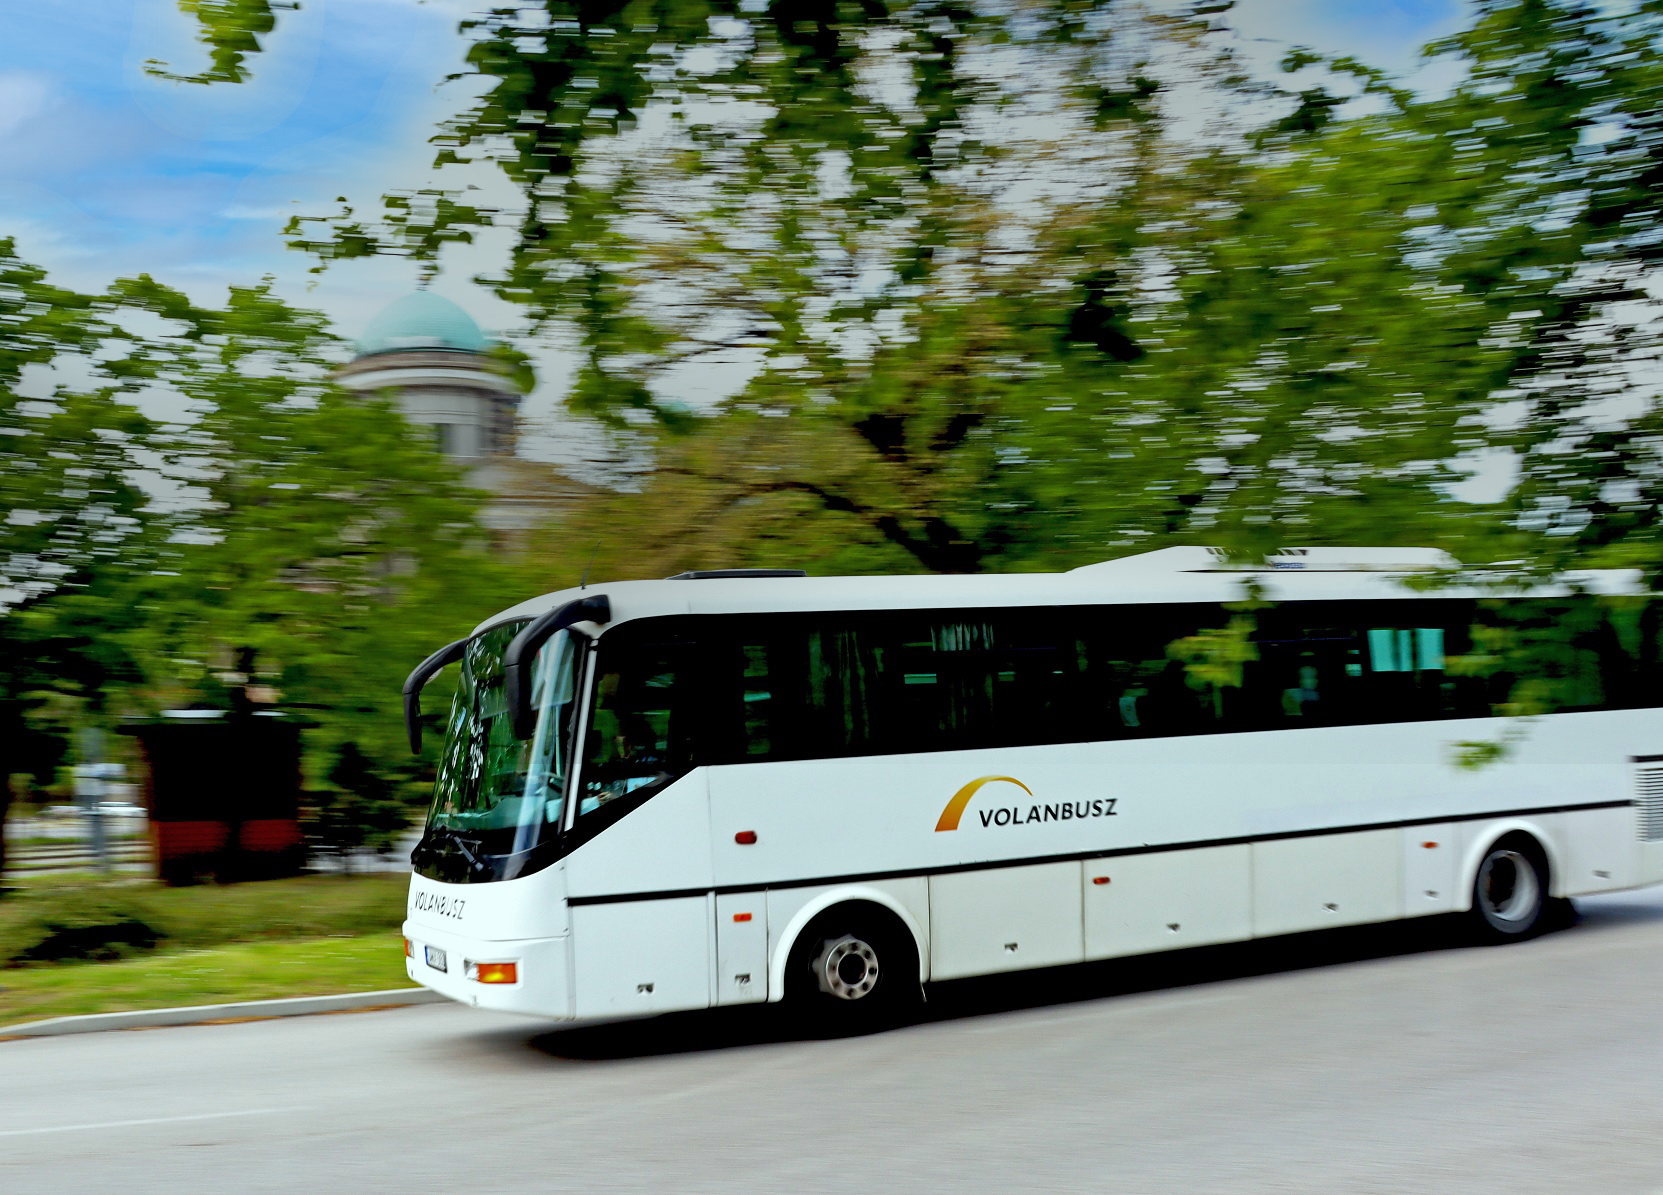 A képen egy autóbusz látható menet közben.